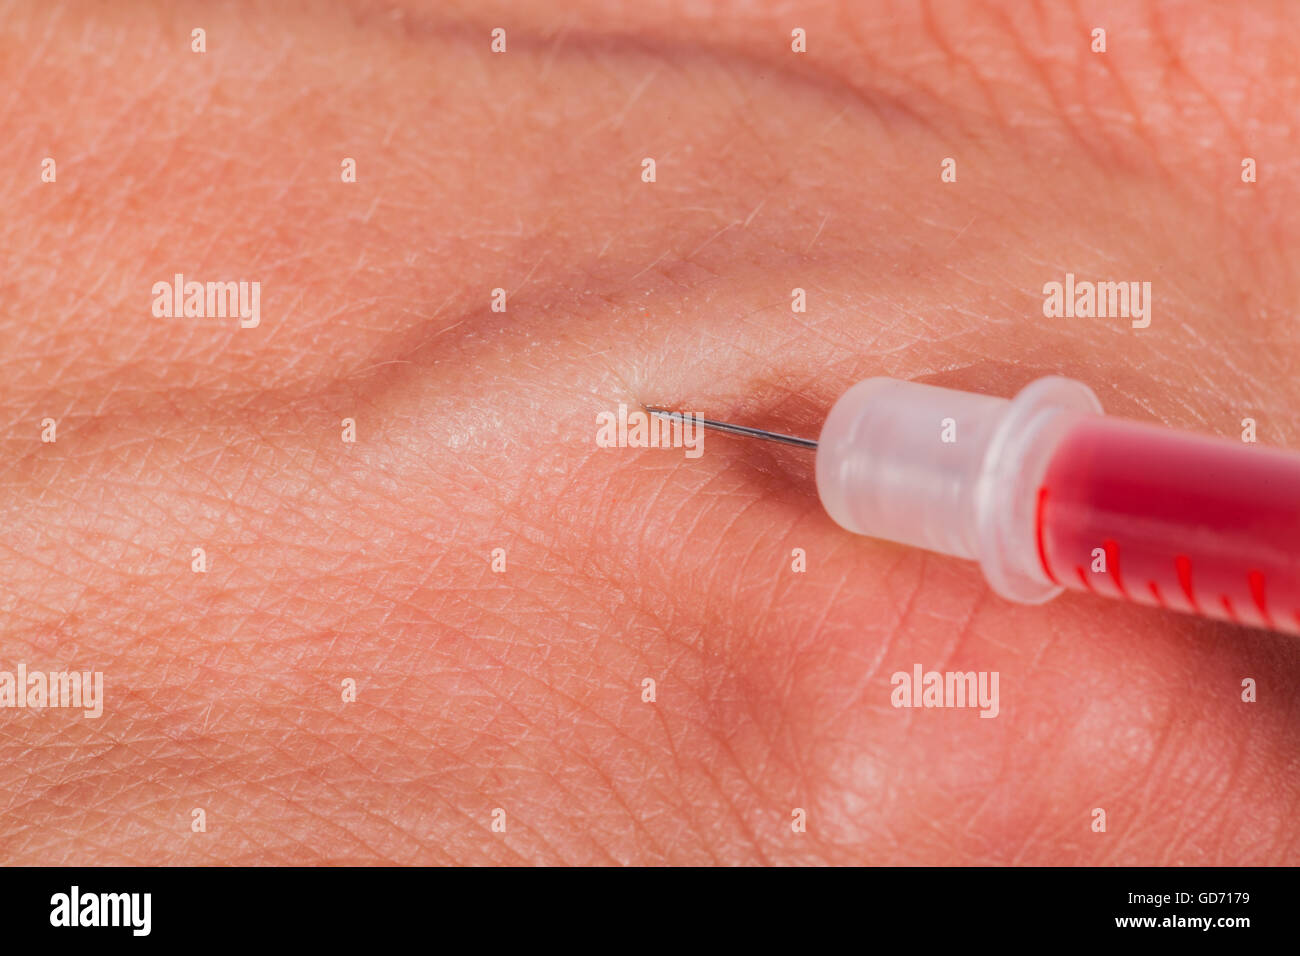 L'injection sous-cutanée medical concept avec une petite seringue  hypodermique remplie d'un liquide rouge pénétrer la peau et de la  production d'un flux de sang dégoulinant dans une vue en gros plan Photo